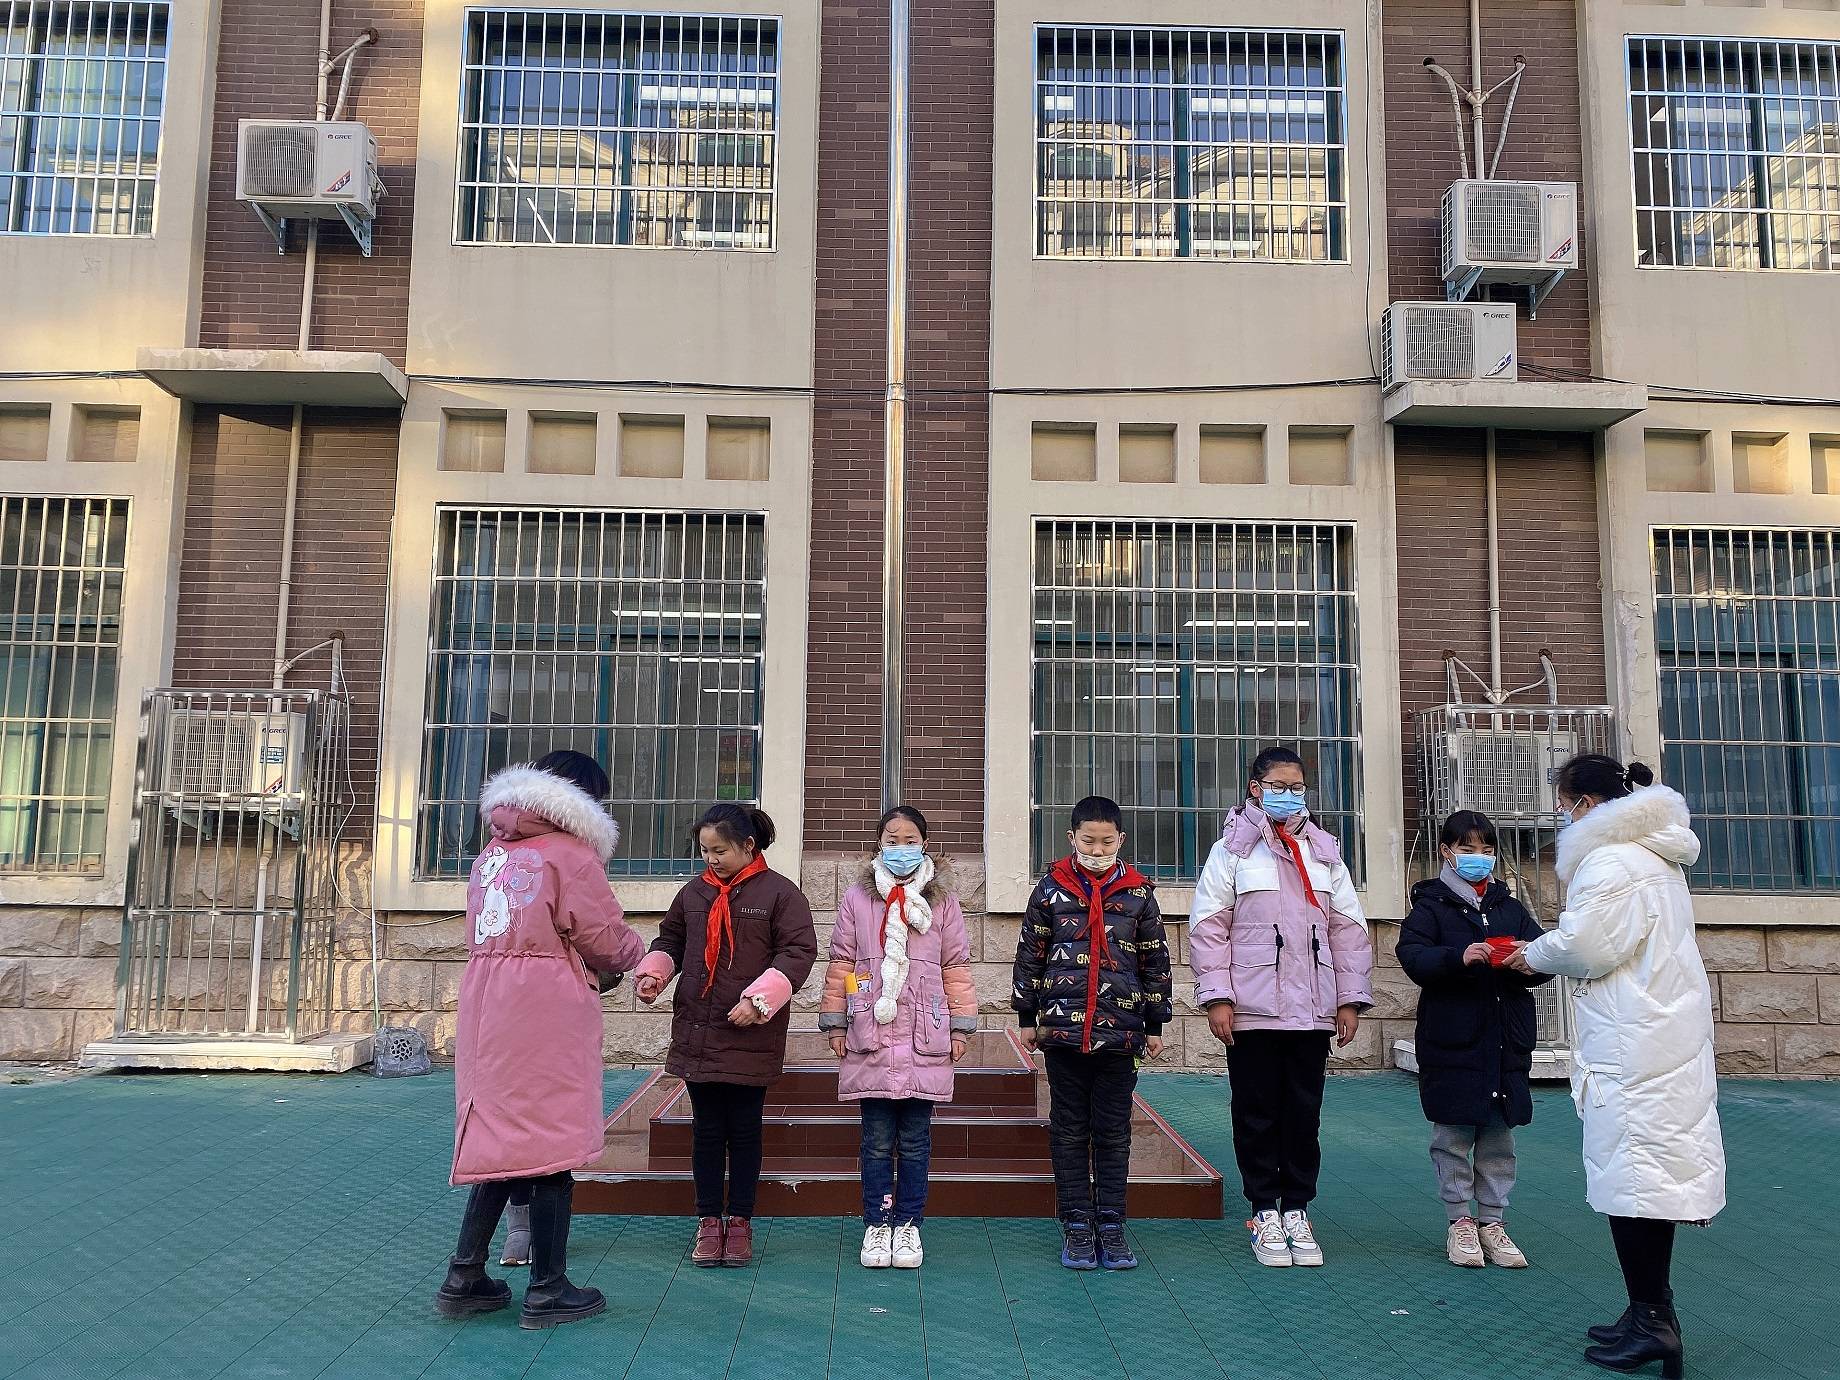 “庆元旦，迎新年”——惠济区青寨小学举行庆元旦主题升旗仪式